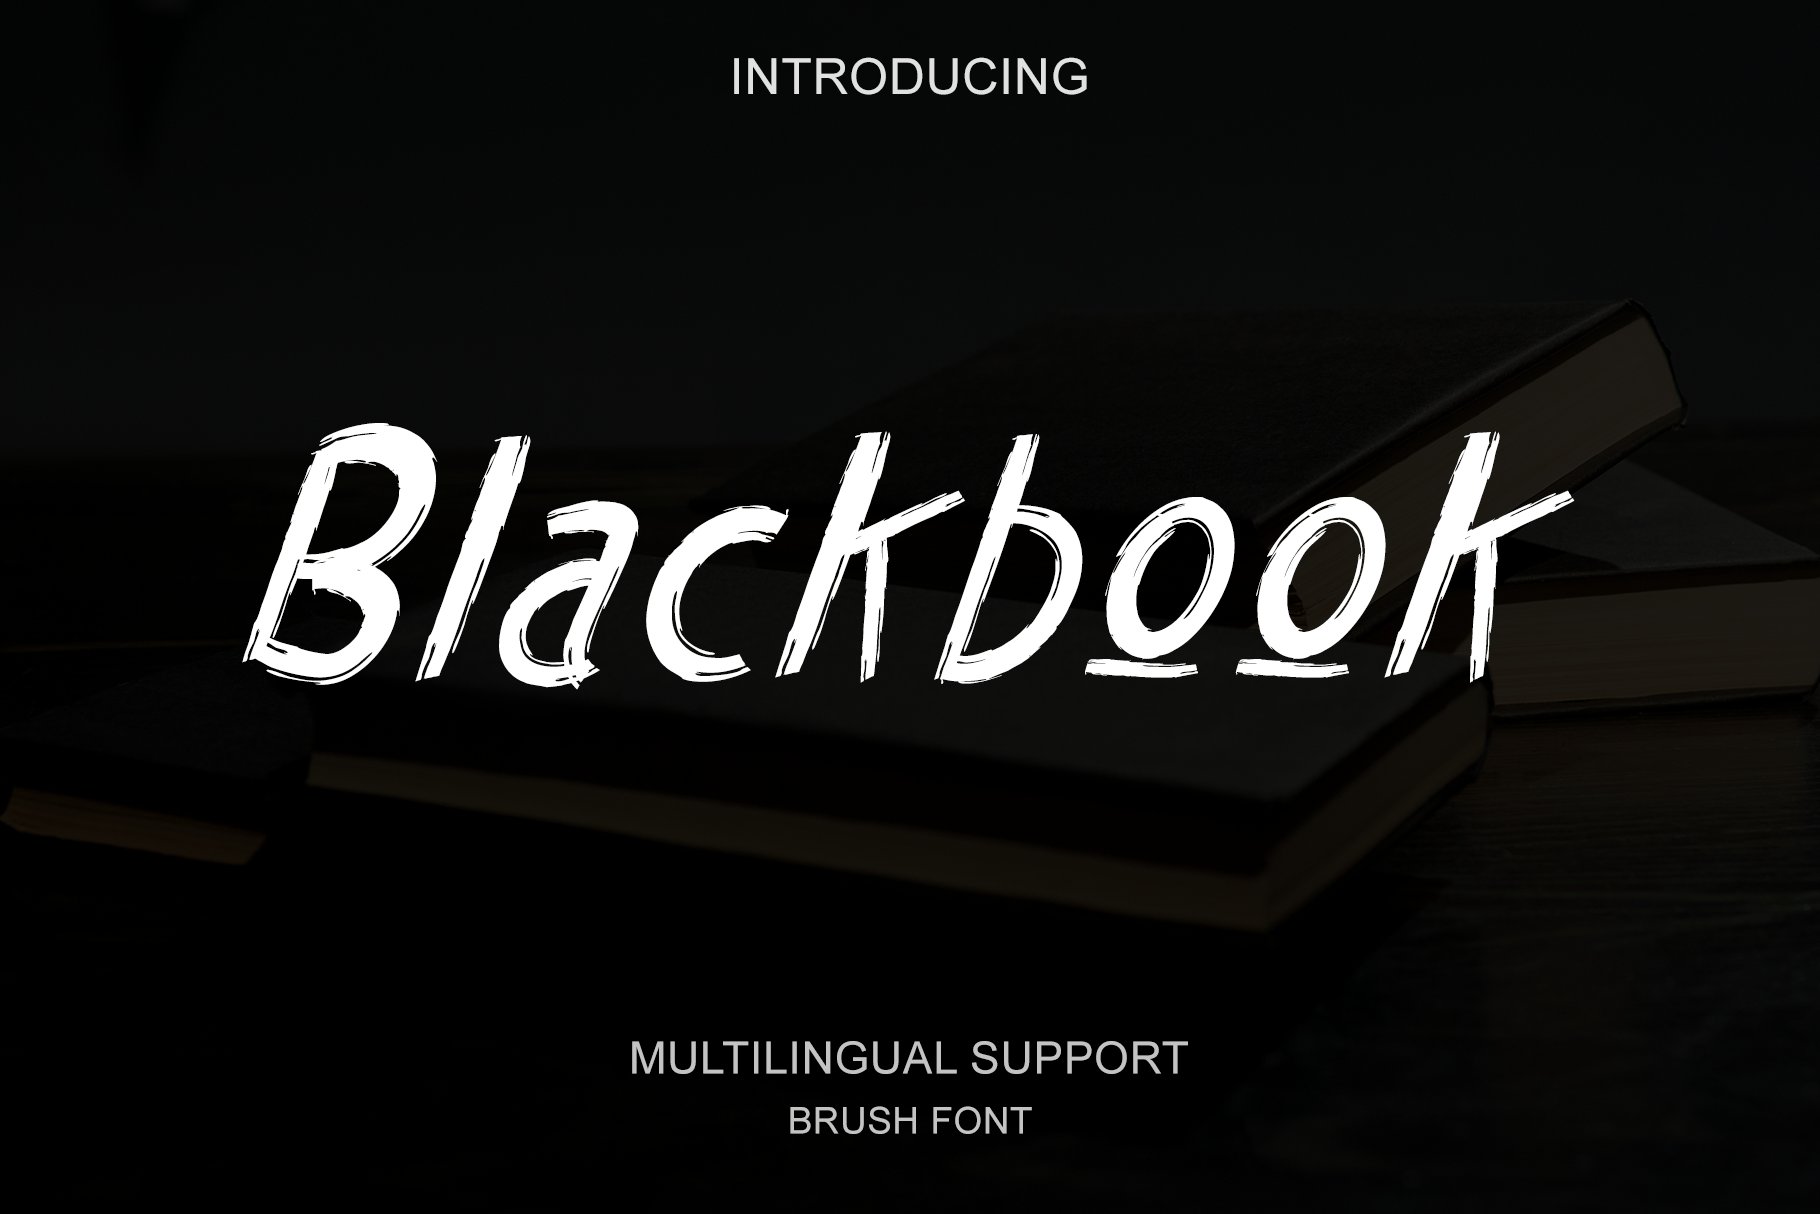 Blackbook - Brush font cover image.